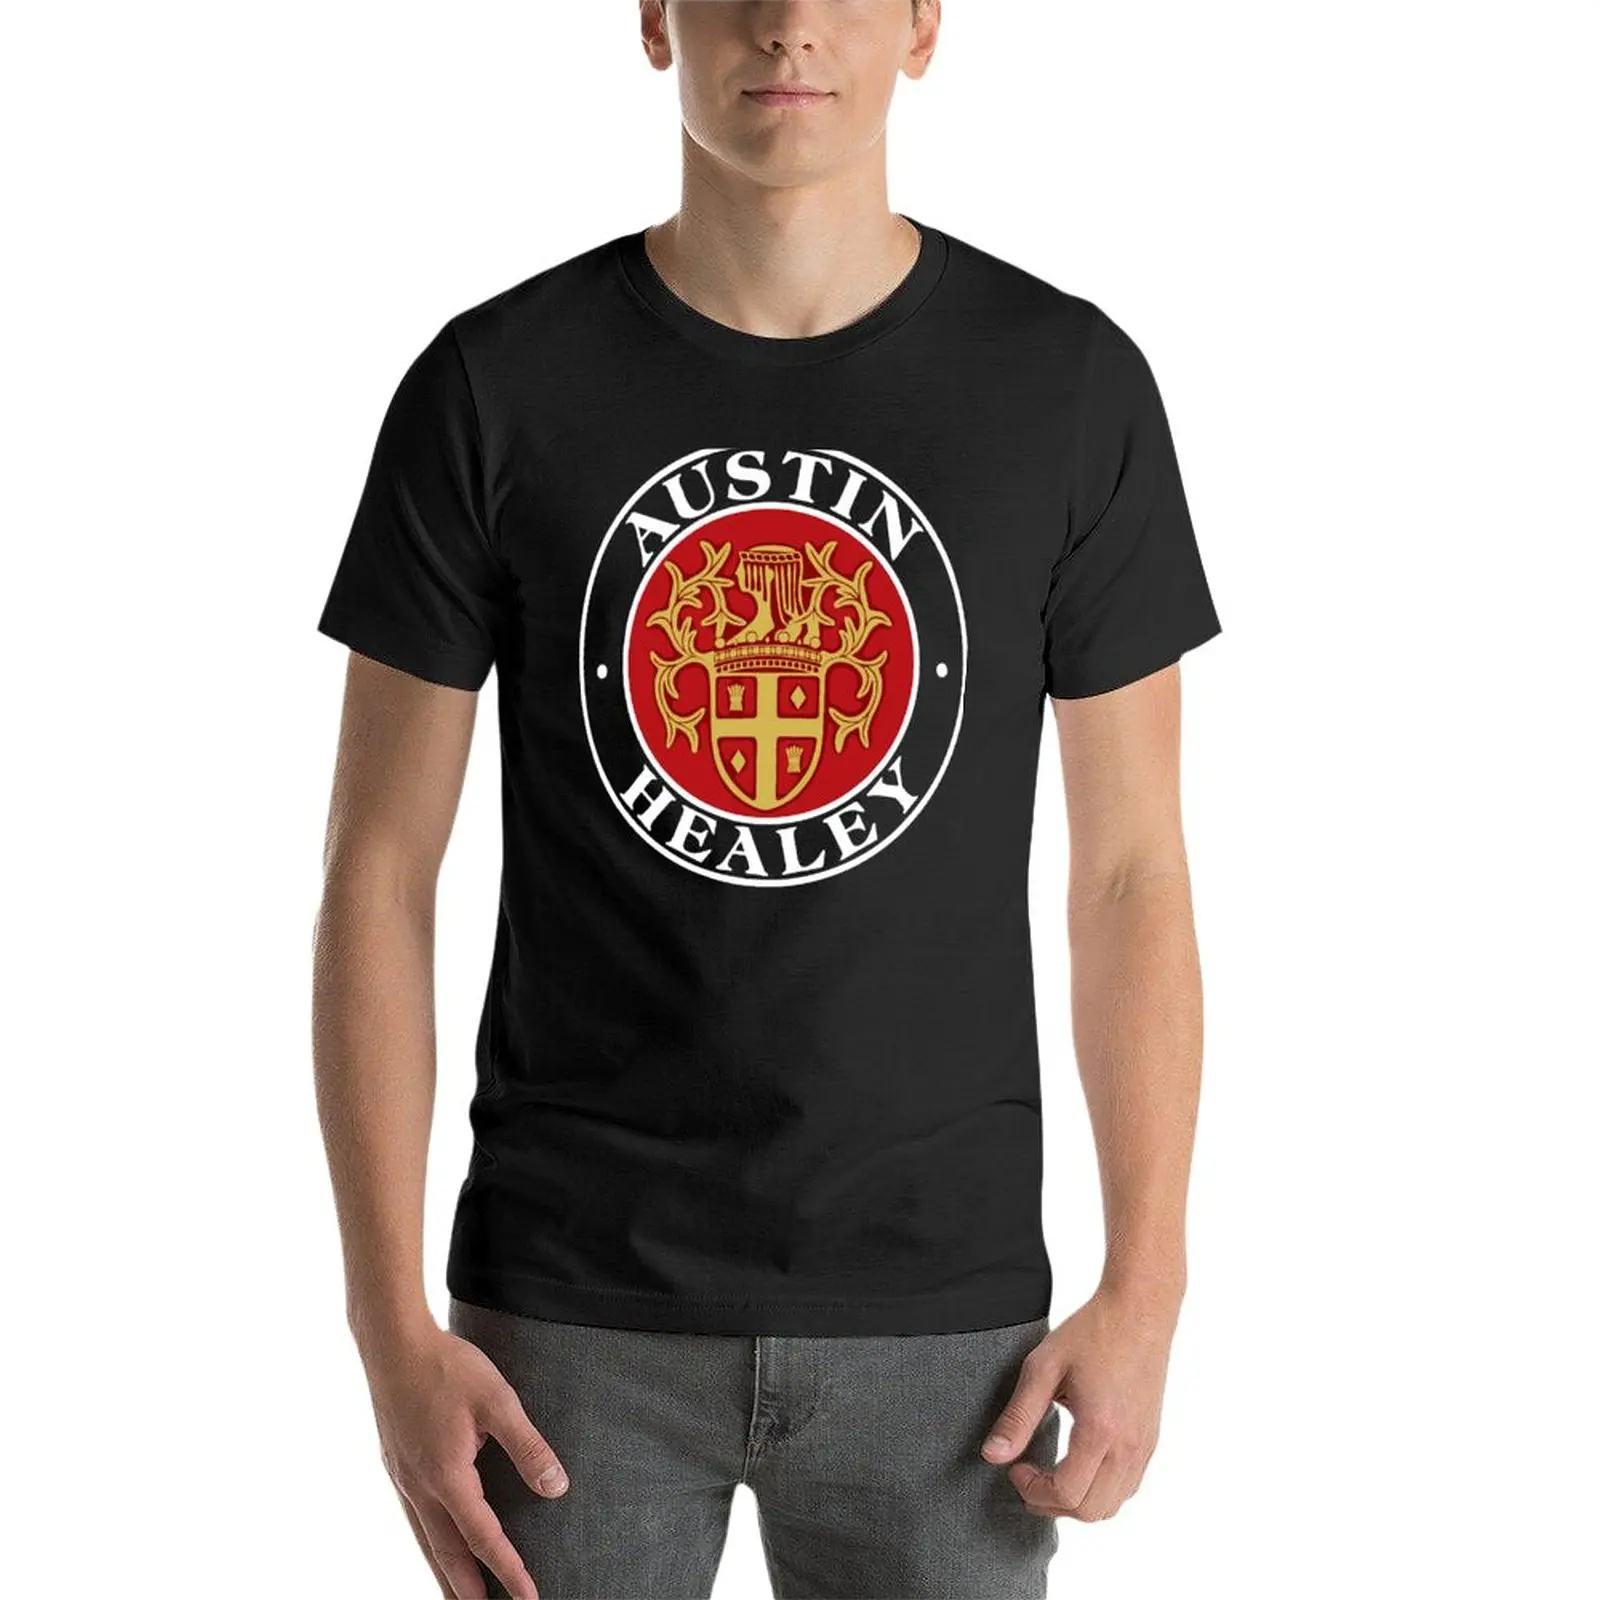 Новая футболка Austin Healey, черная футболка, мужская летняя одежда, футболка, забавные футболки для мужчин Изображение 2